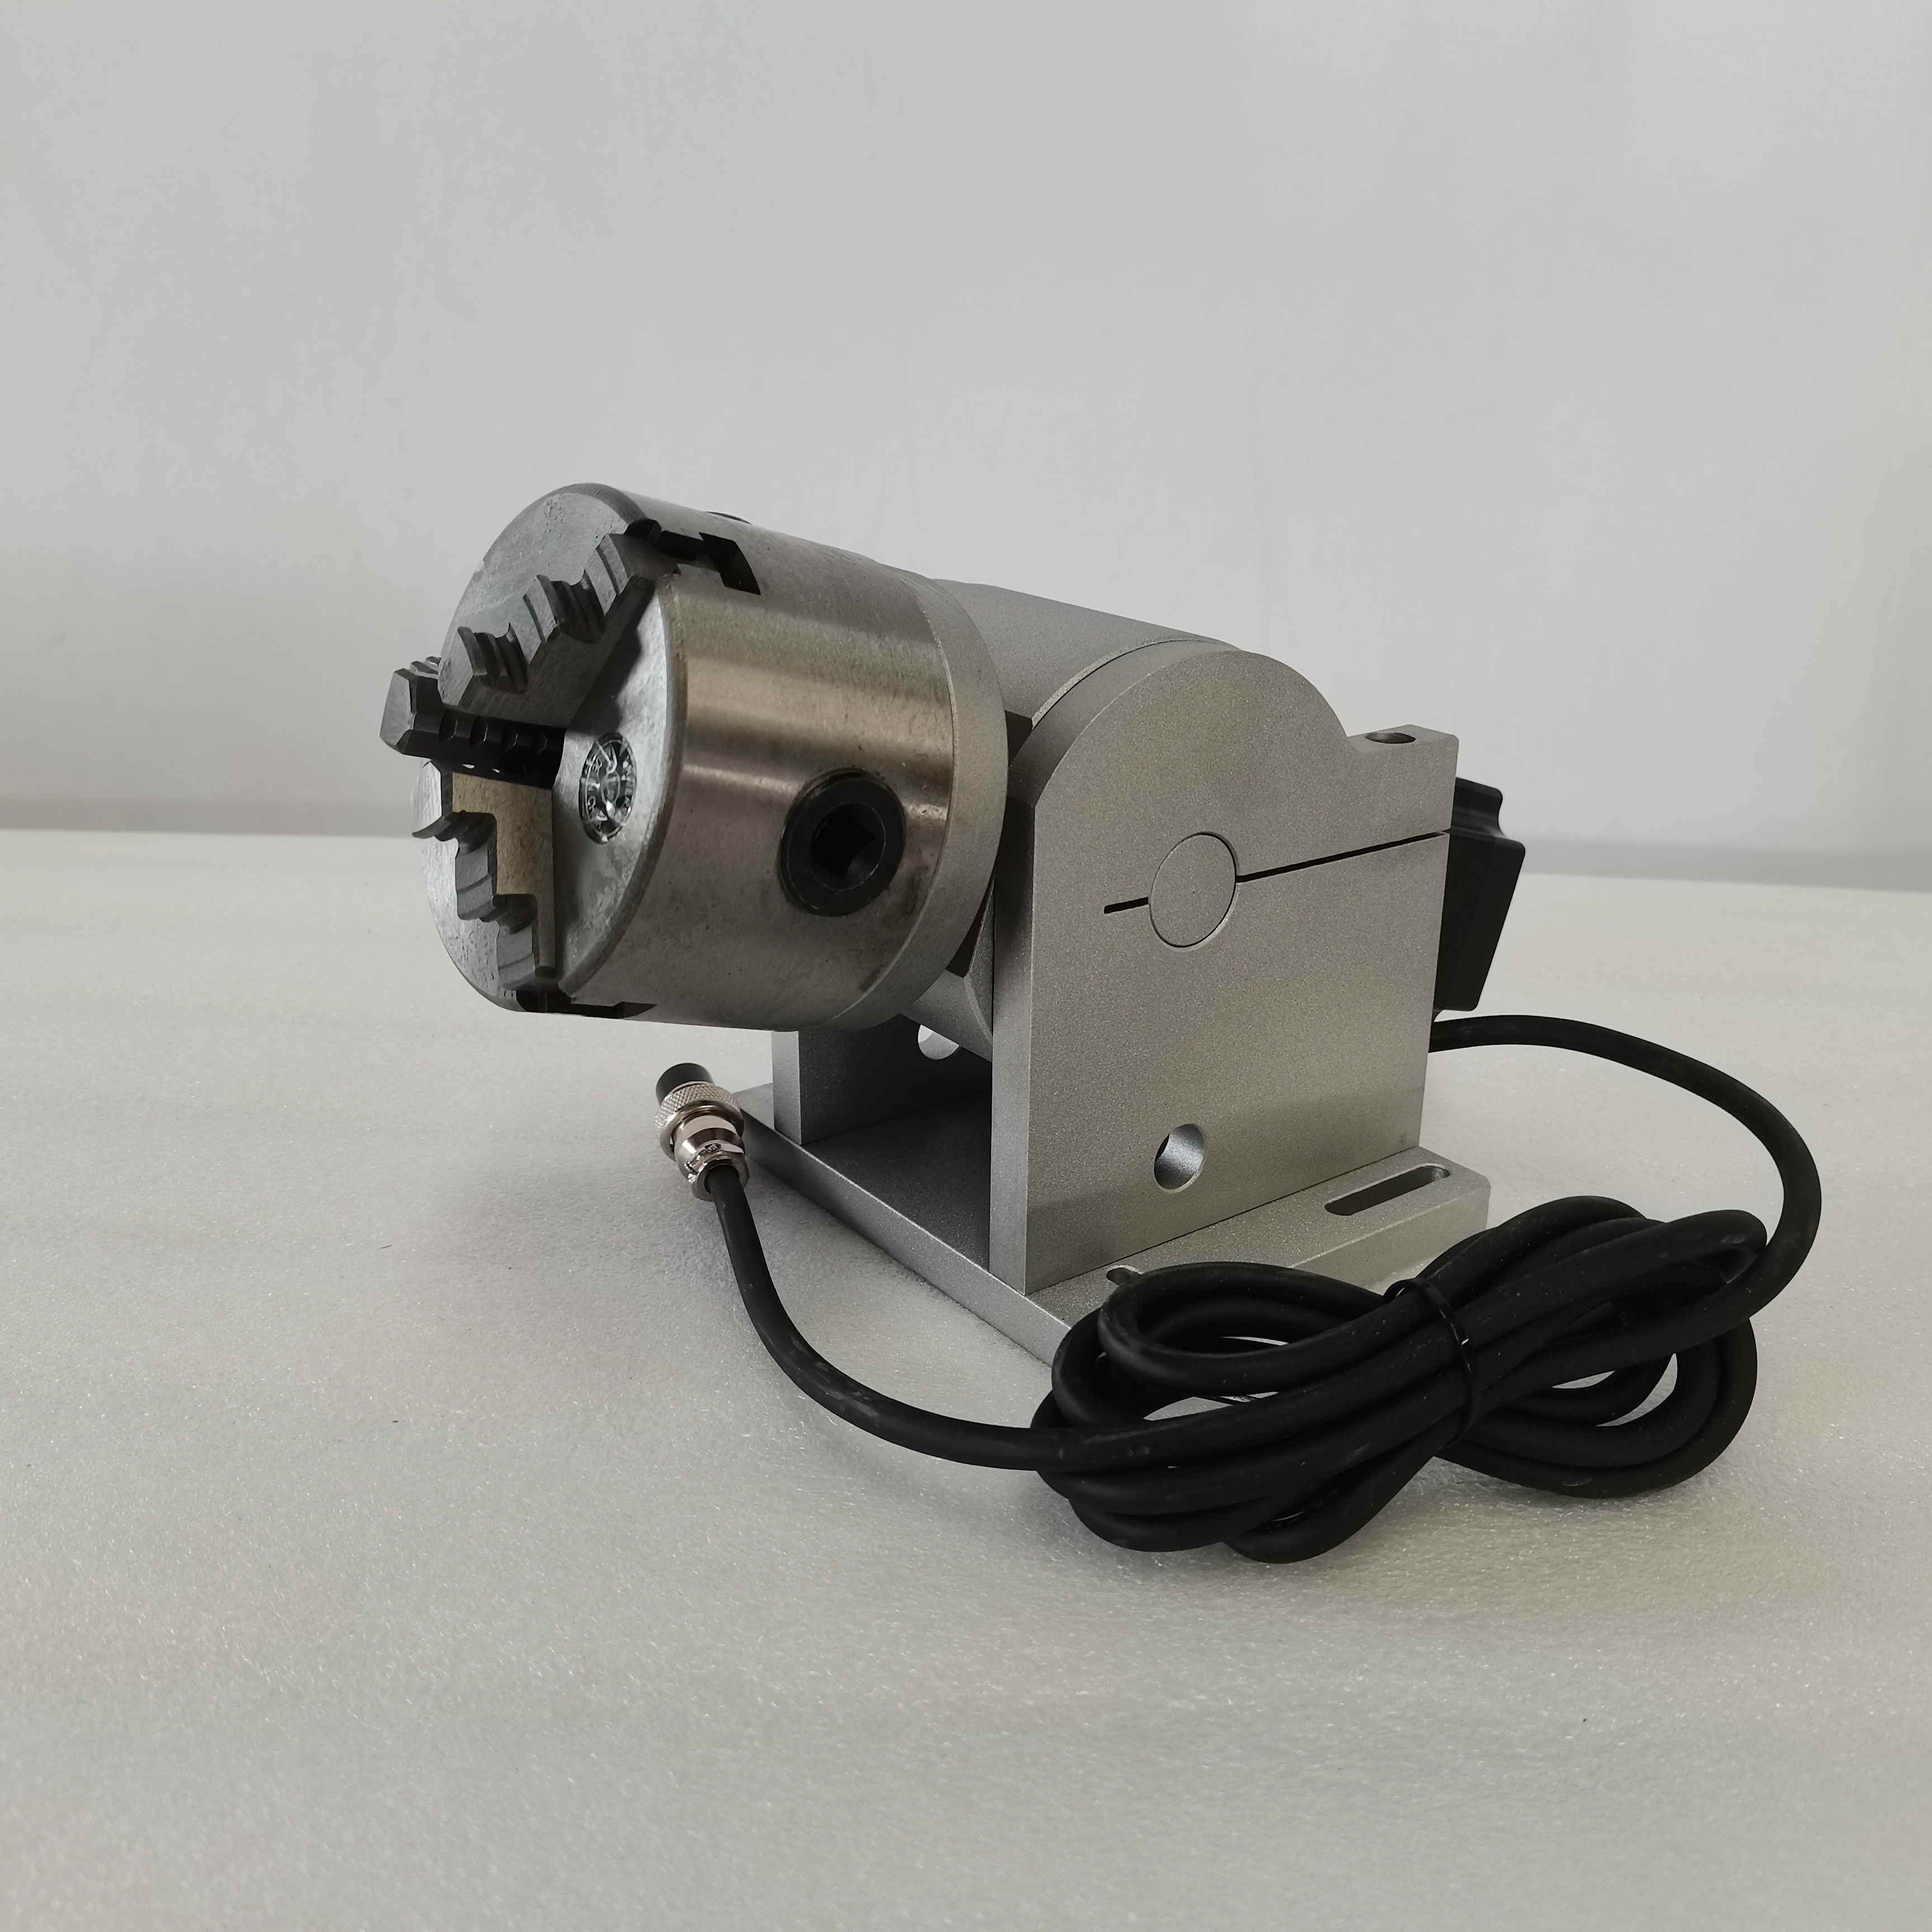 Dispositivu rotativu di cilindru per a macchina di marcatura laser (3)